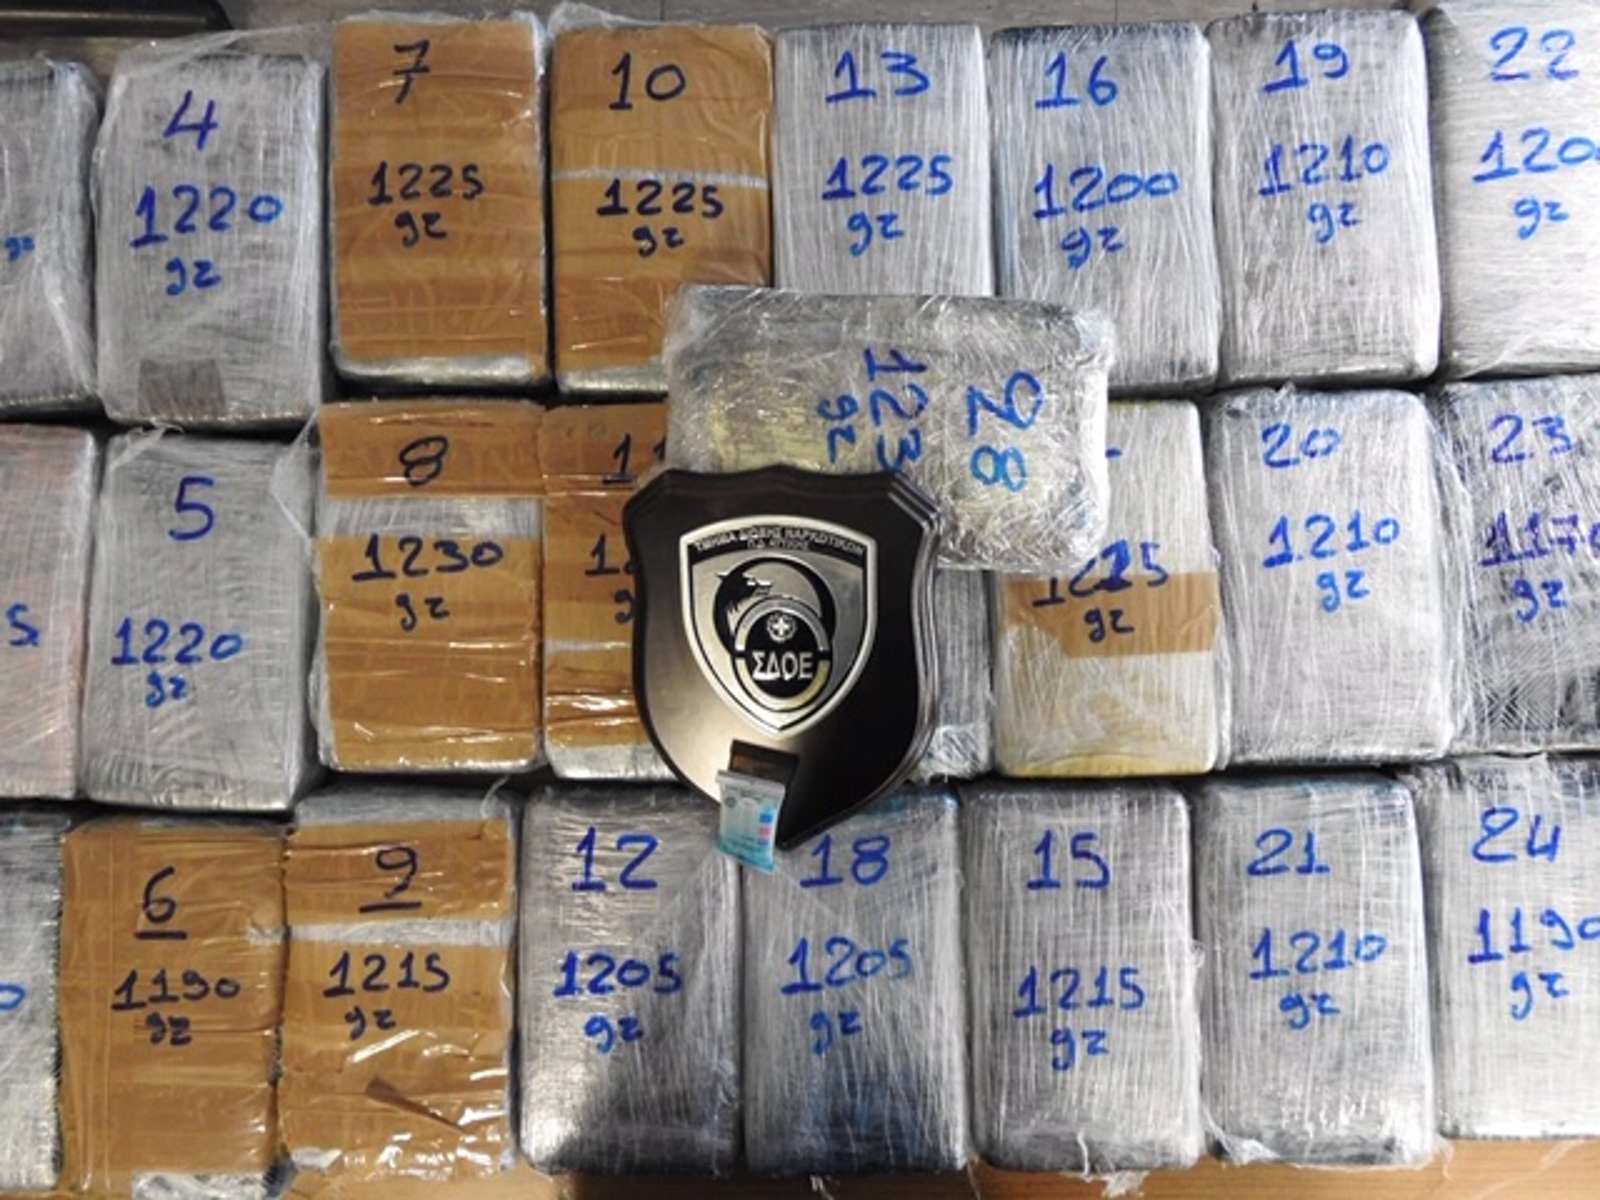 Το κοντέινερ με τις μπανάνες έκρυβε 33 κιλά κοκαΐνης – Μεγάλη επιχείρηση στον Πειραιά